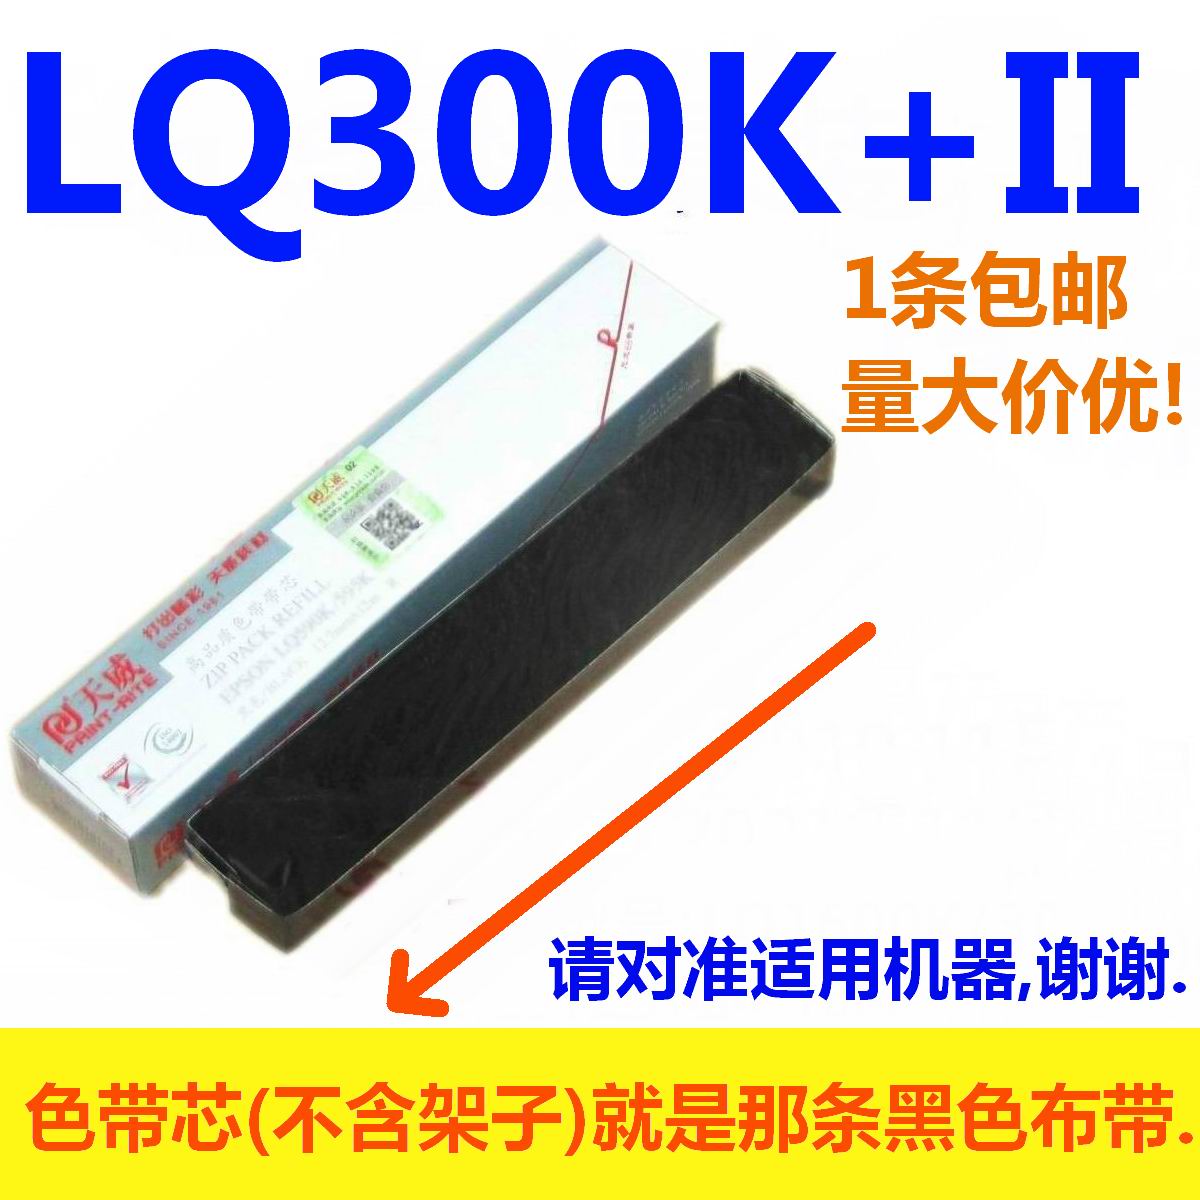 天威色带芯适用EPSON LQ1600K/300K+II LQ300K+II 580K+ LQ300K2